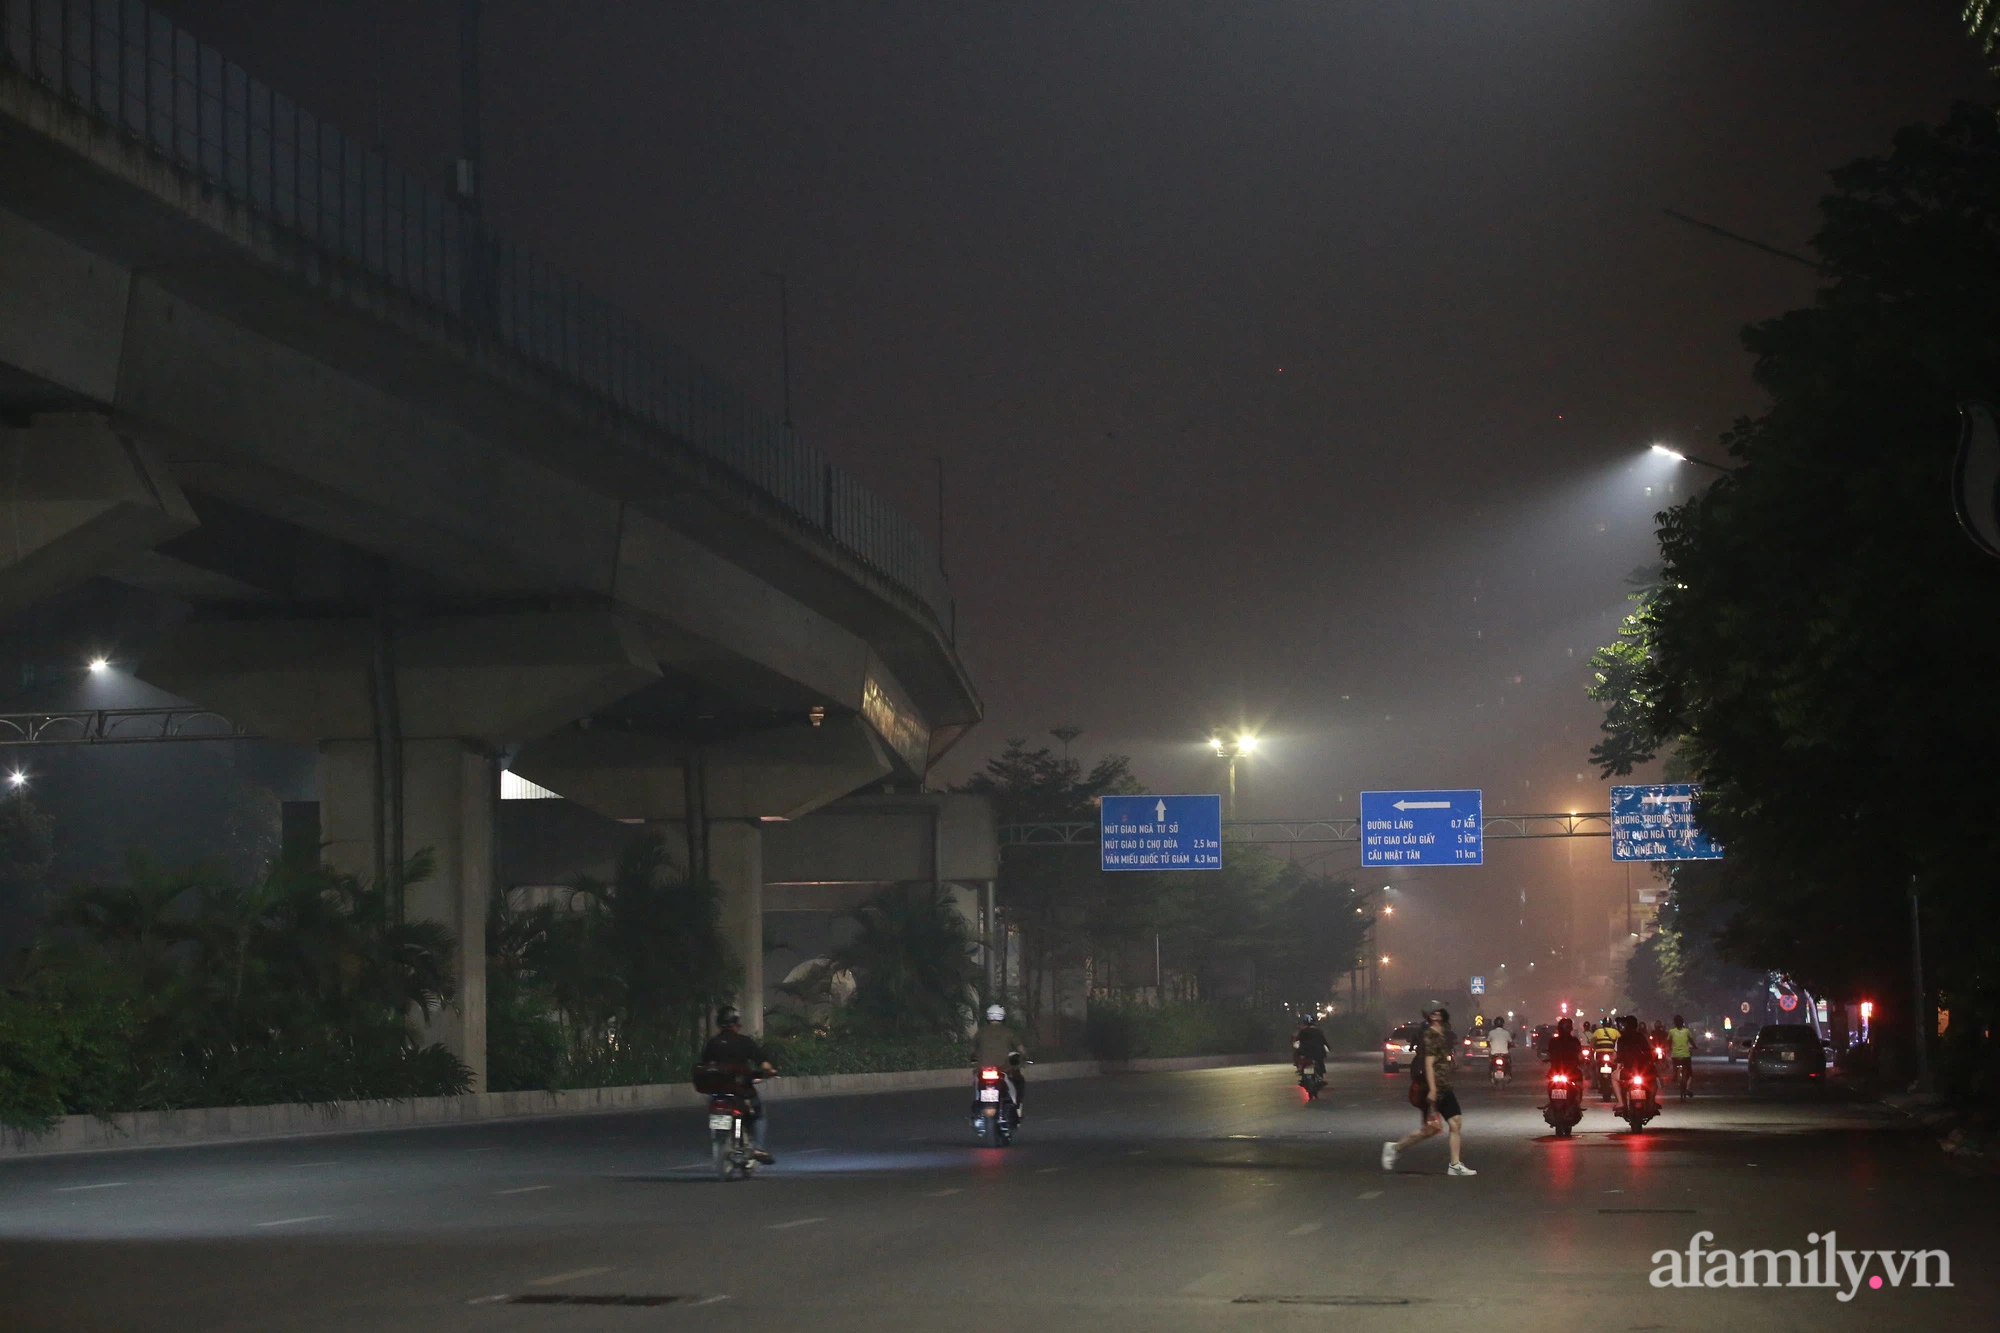 Dù là trong sương mù hay trong những ngày mù mịt, Hà Nội vẫn có những giây phút khó tả đẹp vô cùng. Hình ảnh đường phố bị che giấu bởi, những ánh đèn lung linh, bạn sẽ cảm nhận được sự lãng mạn và cuốn hút của thủ đô nơi đây.